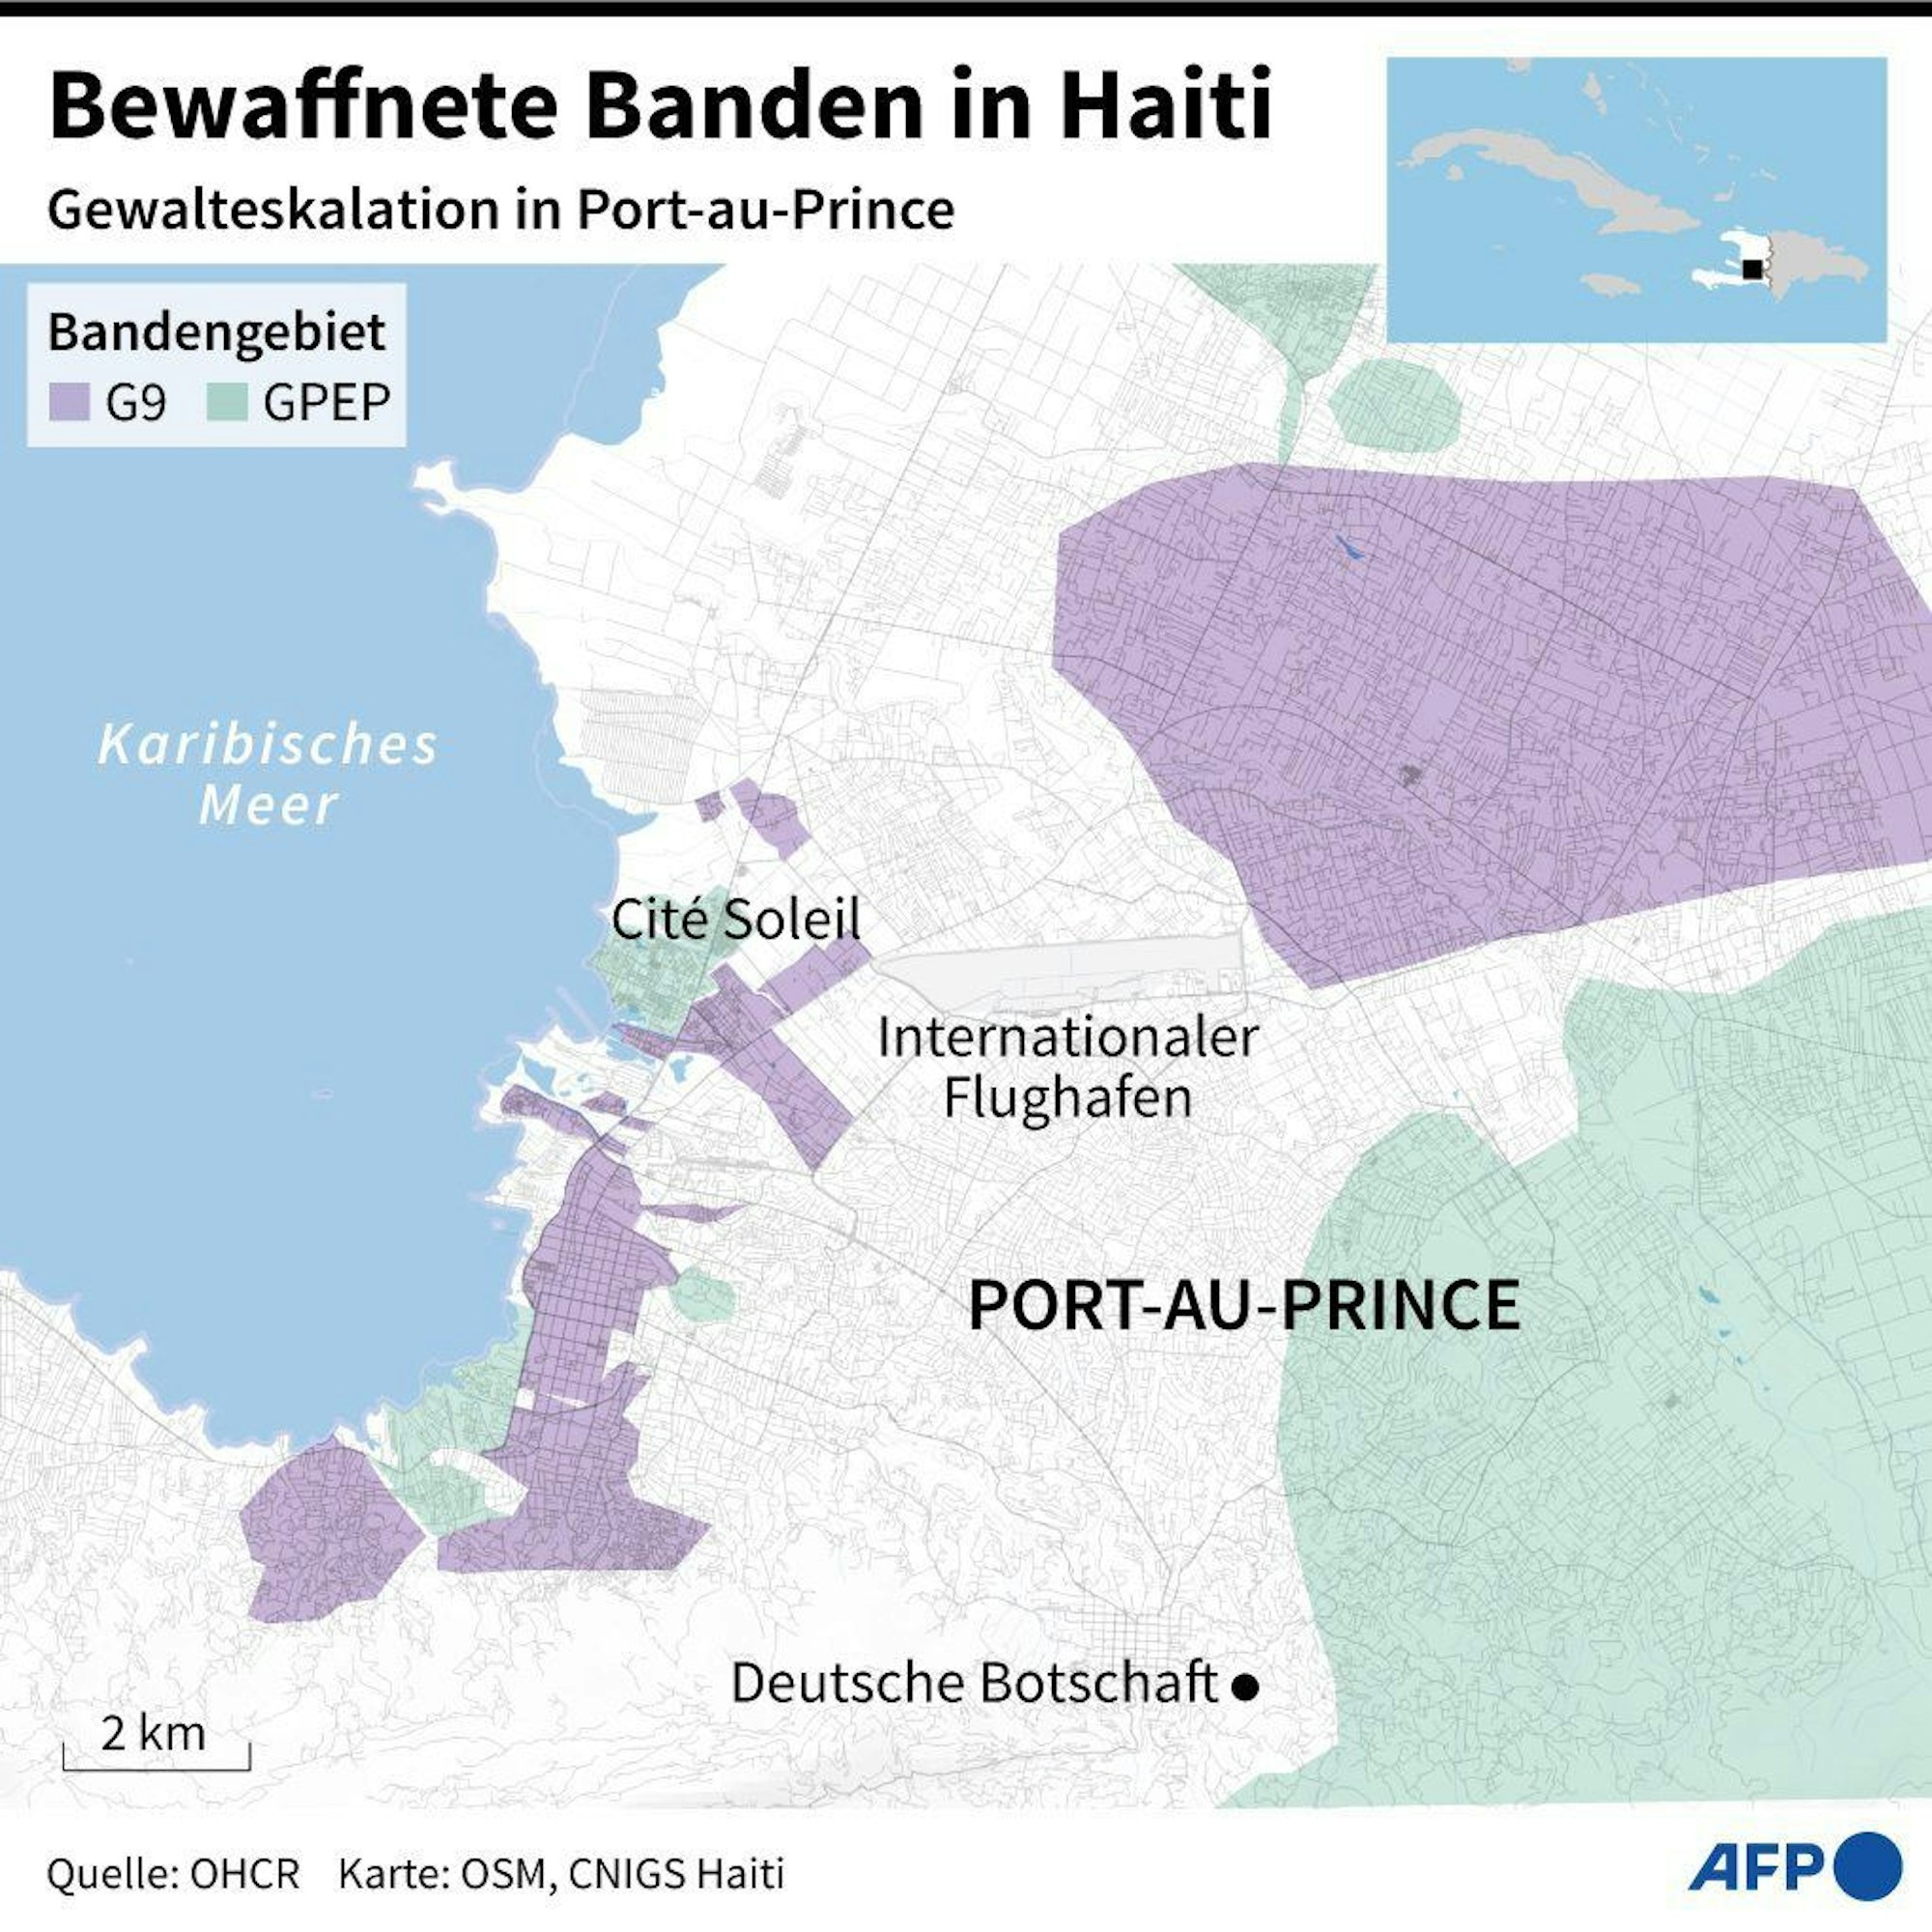 Bandengebiete in Port-au-Prince und Lage der deutschen Botschaft.